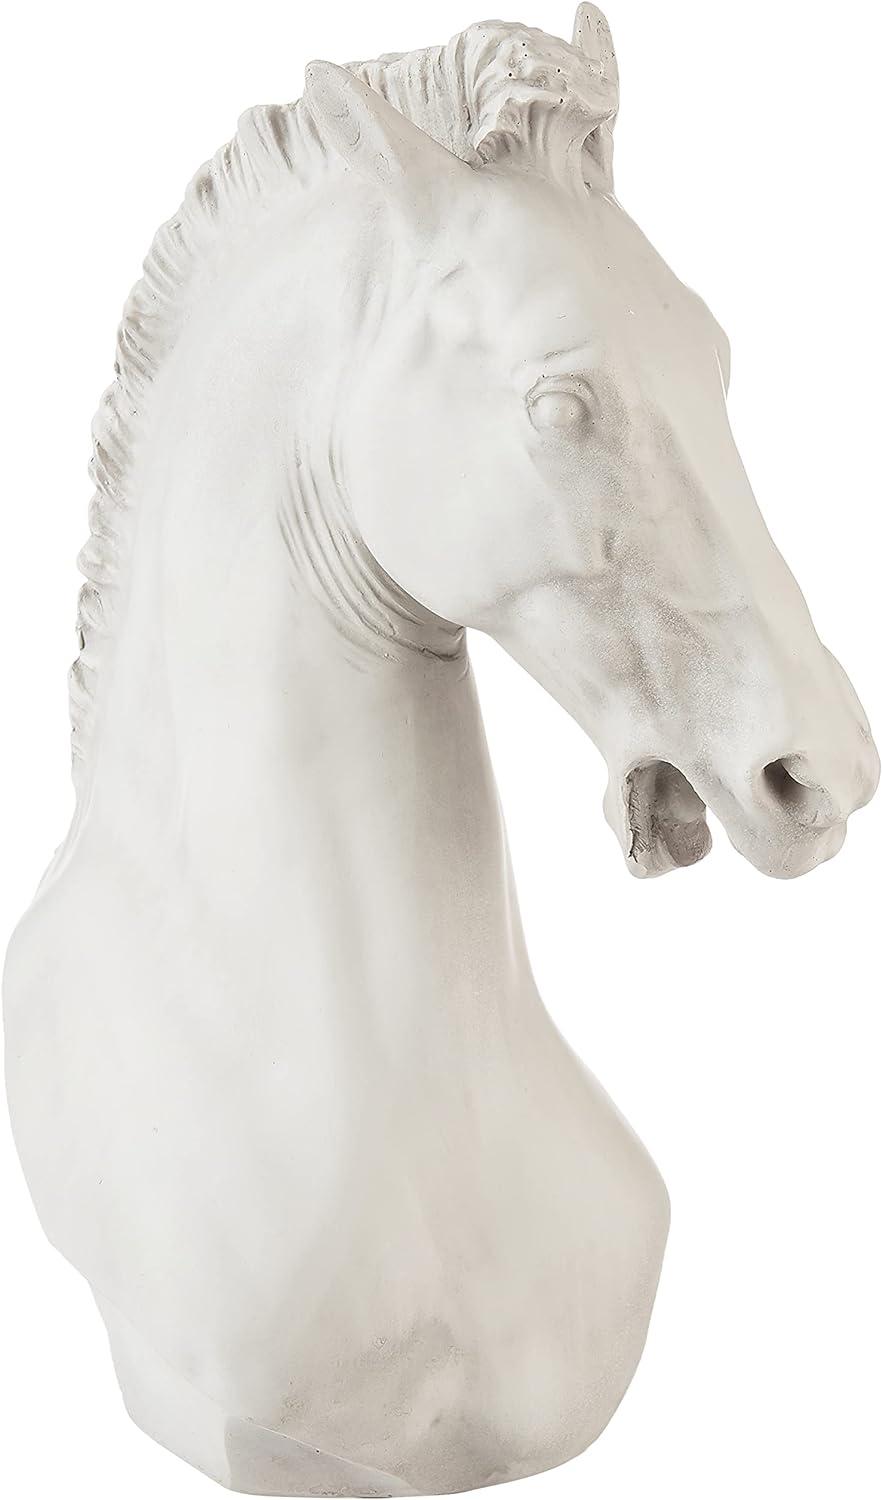 Elegant Turino Horse Statue 12" Resin Art Sculpture